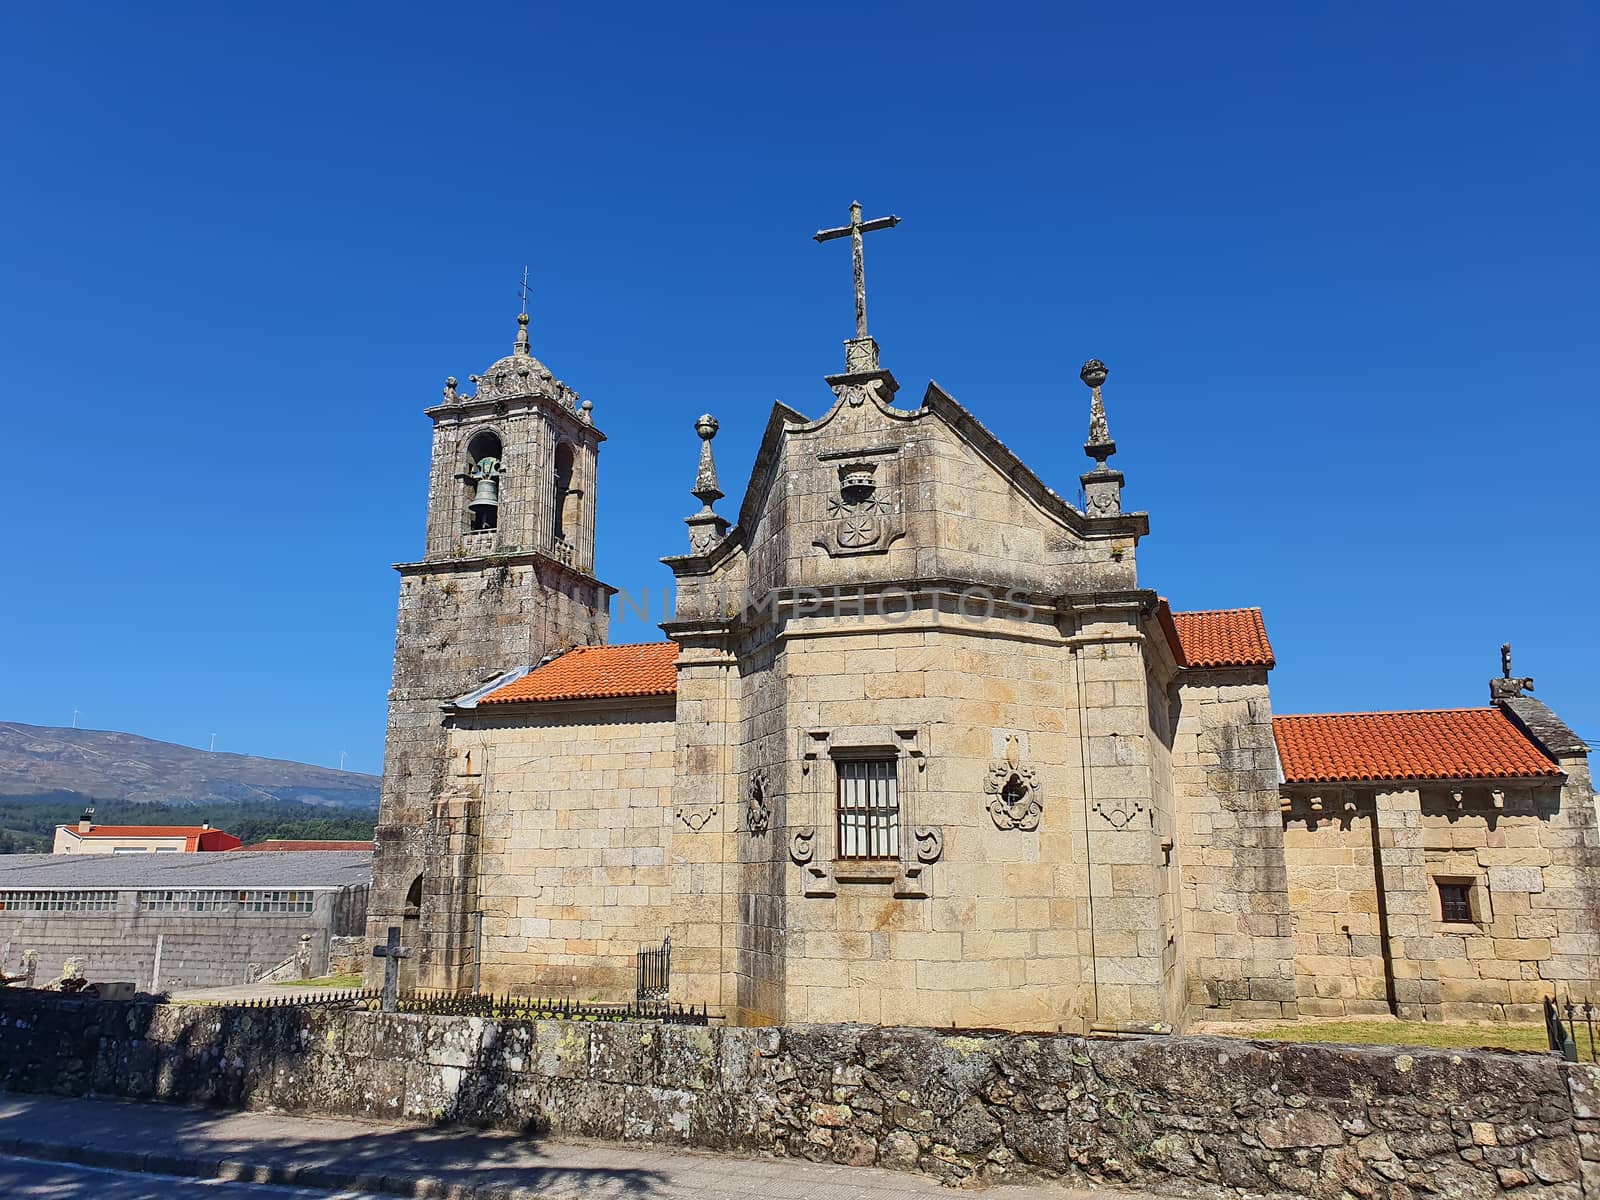 Small ancient church, Saint Mary in Caldas de Reis, Spain